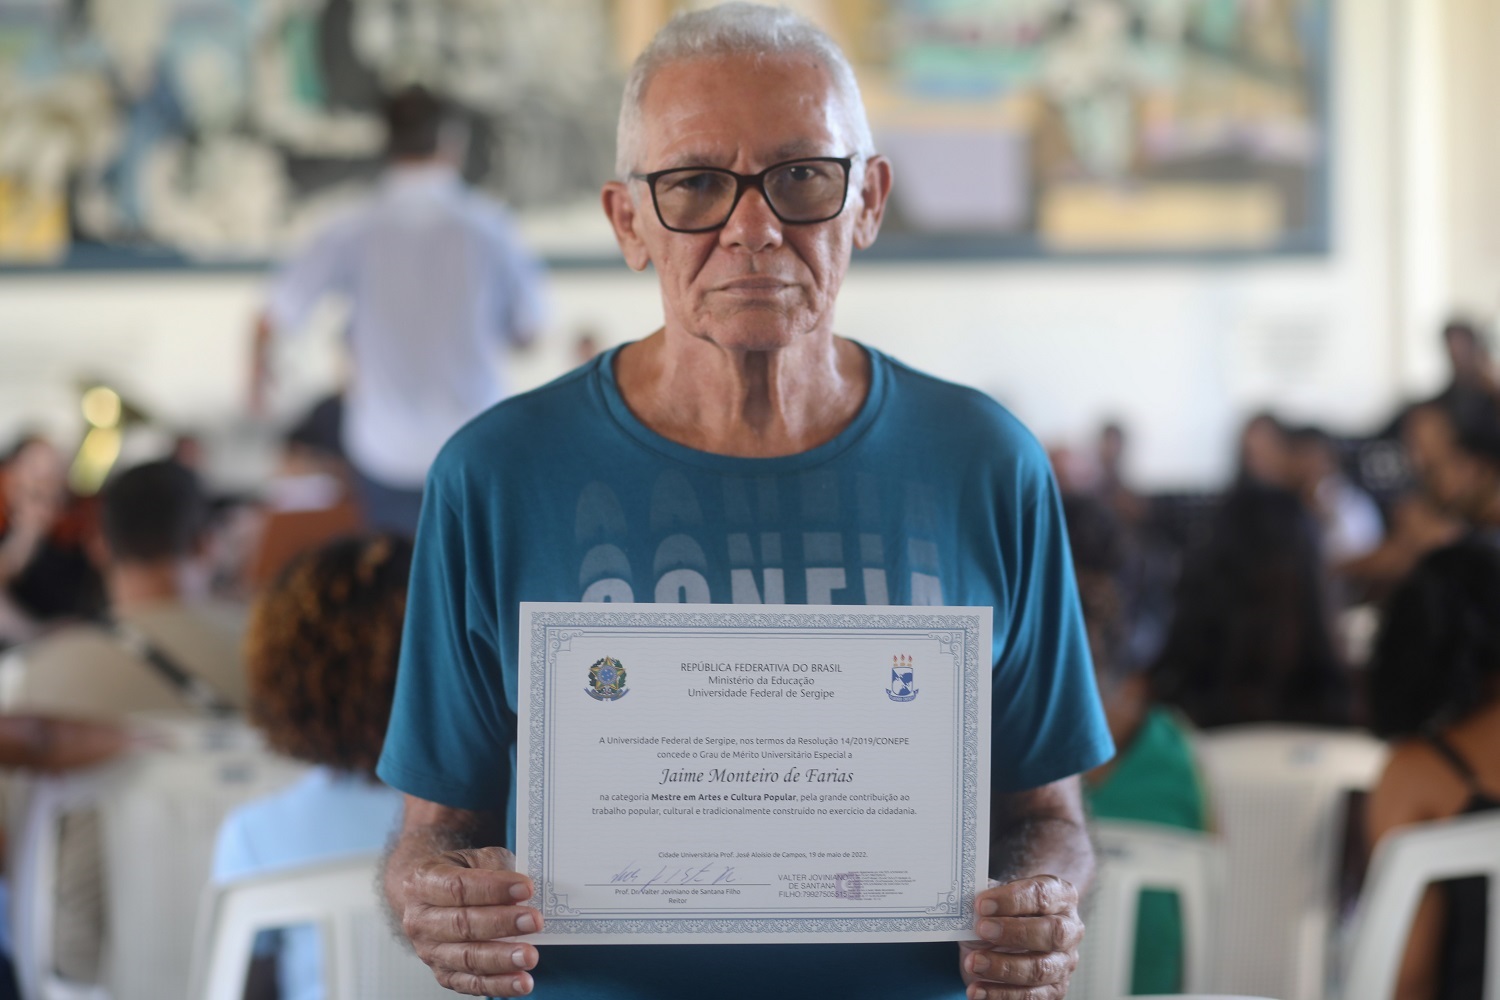 Jaime Monteiro recebeu o certificado de Grau de Mérito Universitário Especial em Saberes e Fazeres em Artes e Cultura Popular durante a atividade. (foto: Janaína Cavalcante/Ascom UFS)